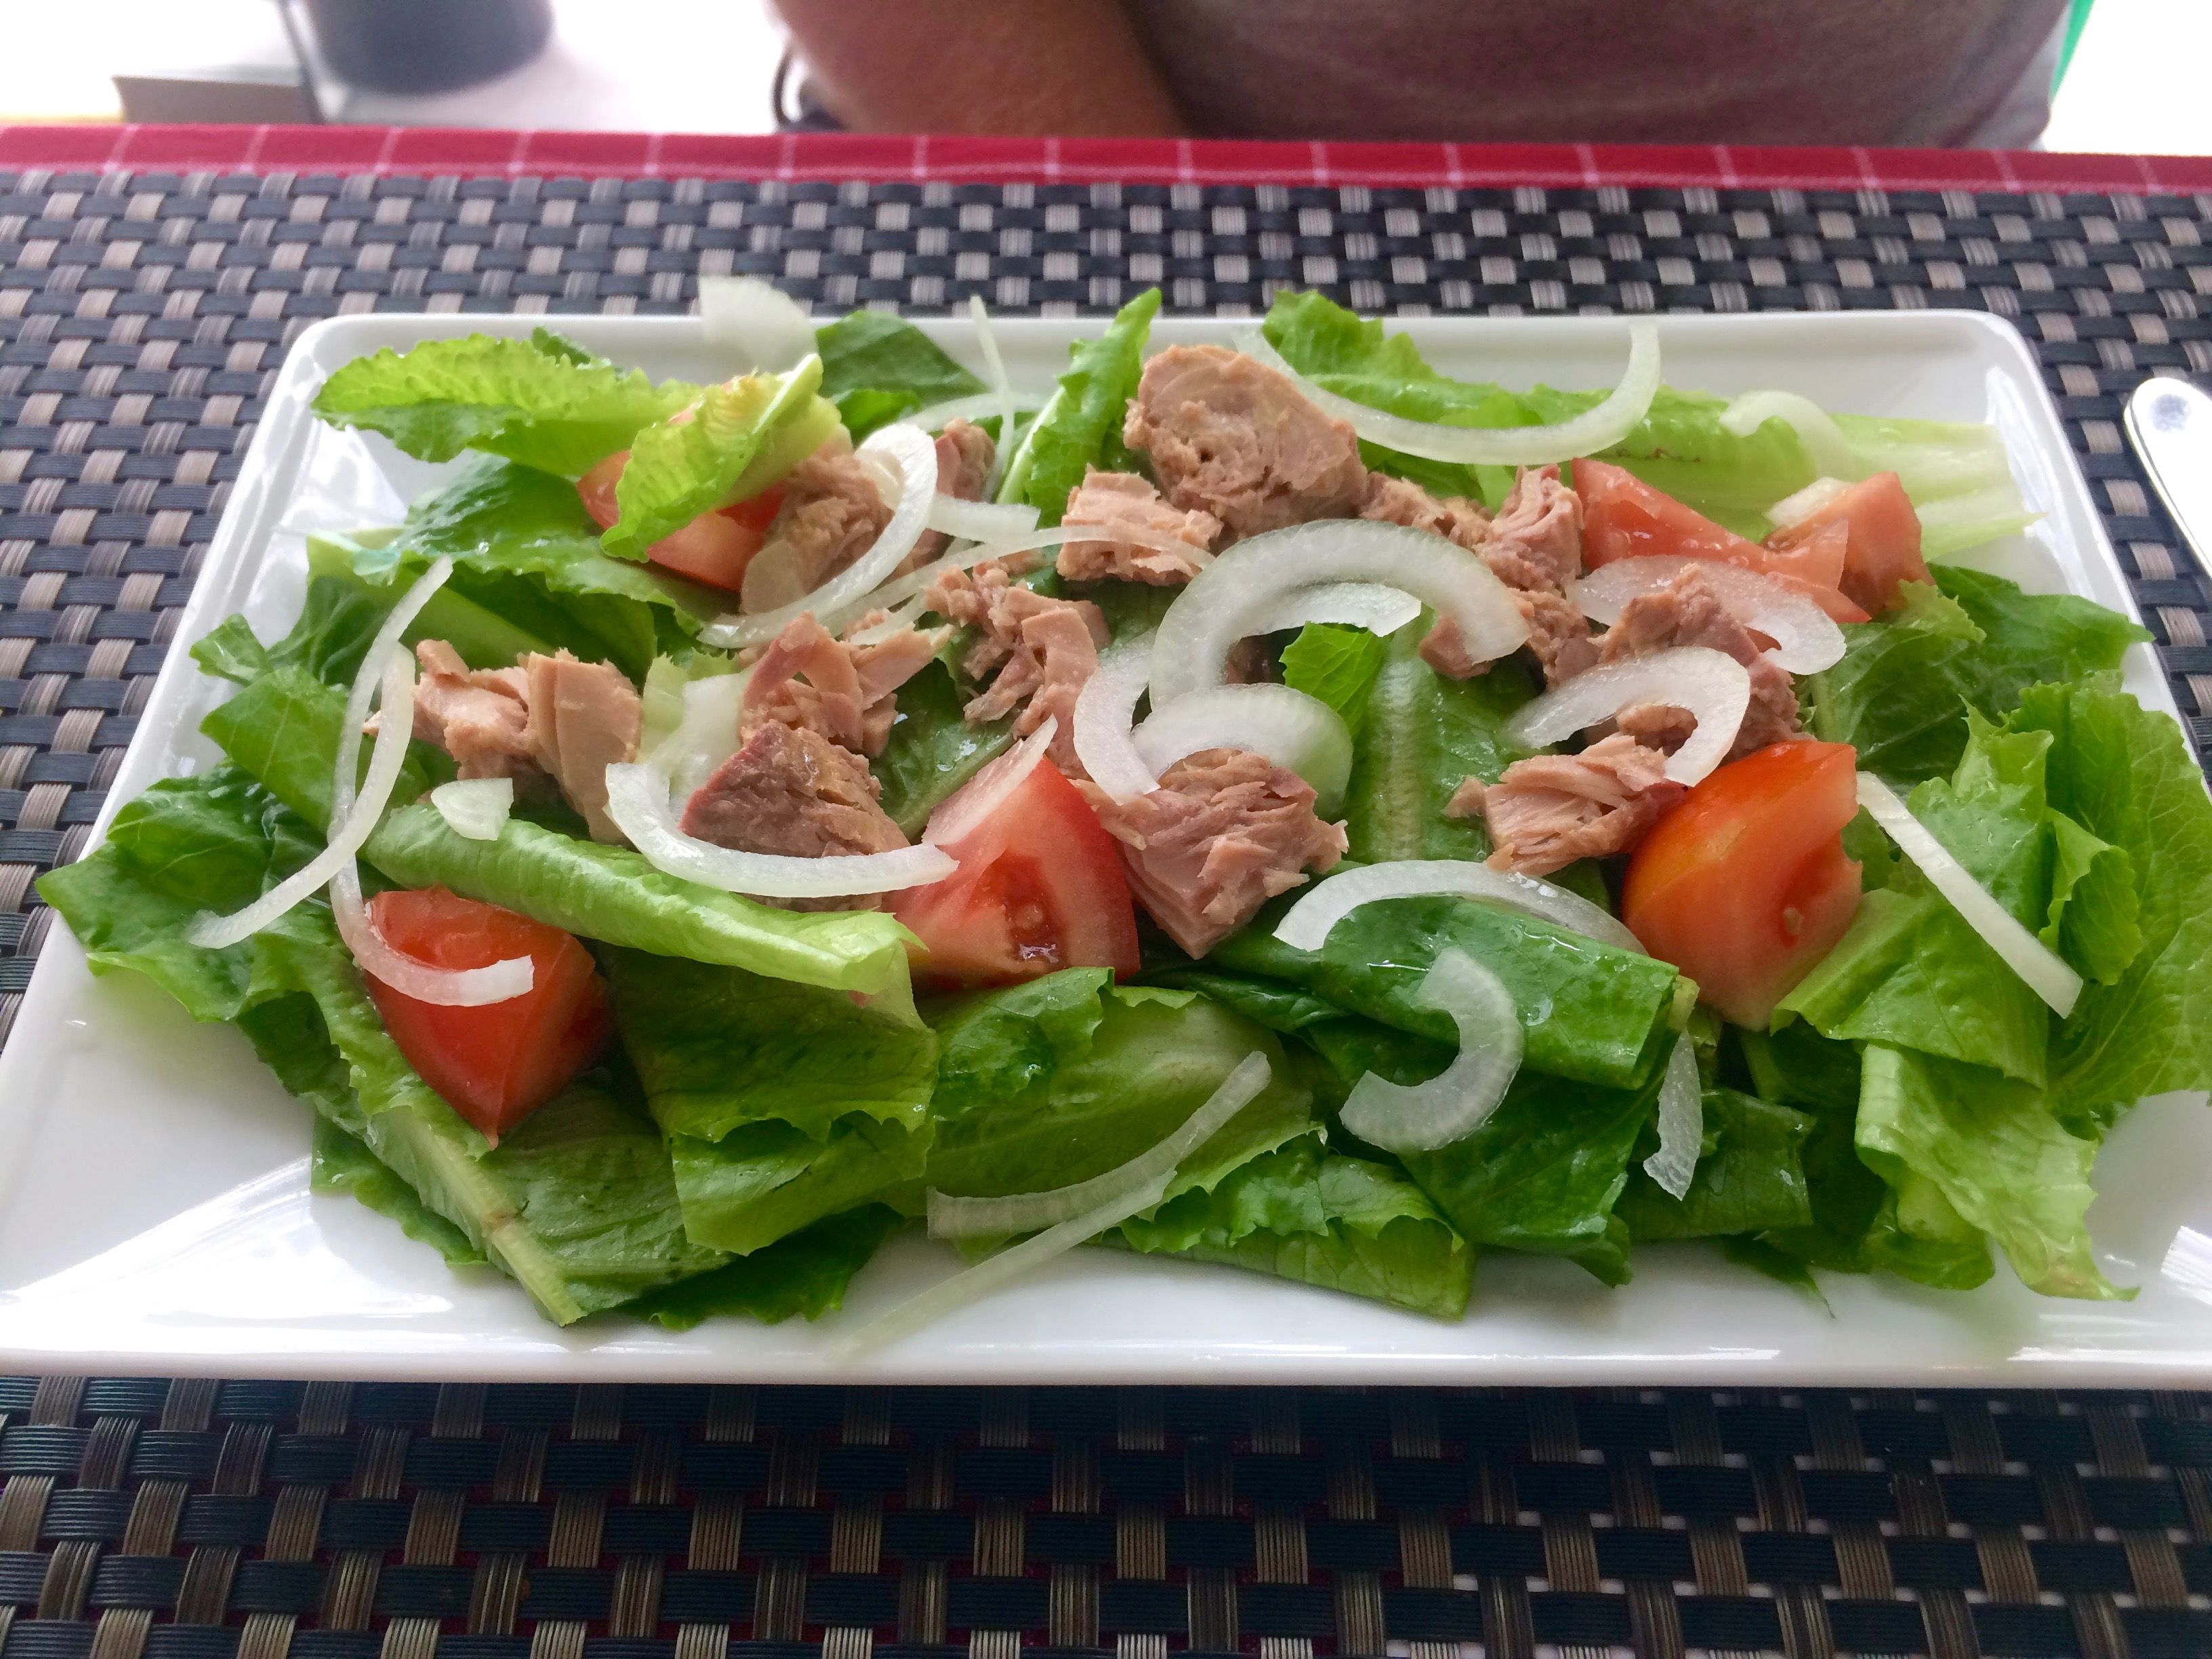 Tuna Salad.jpg